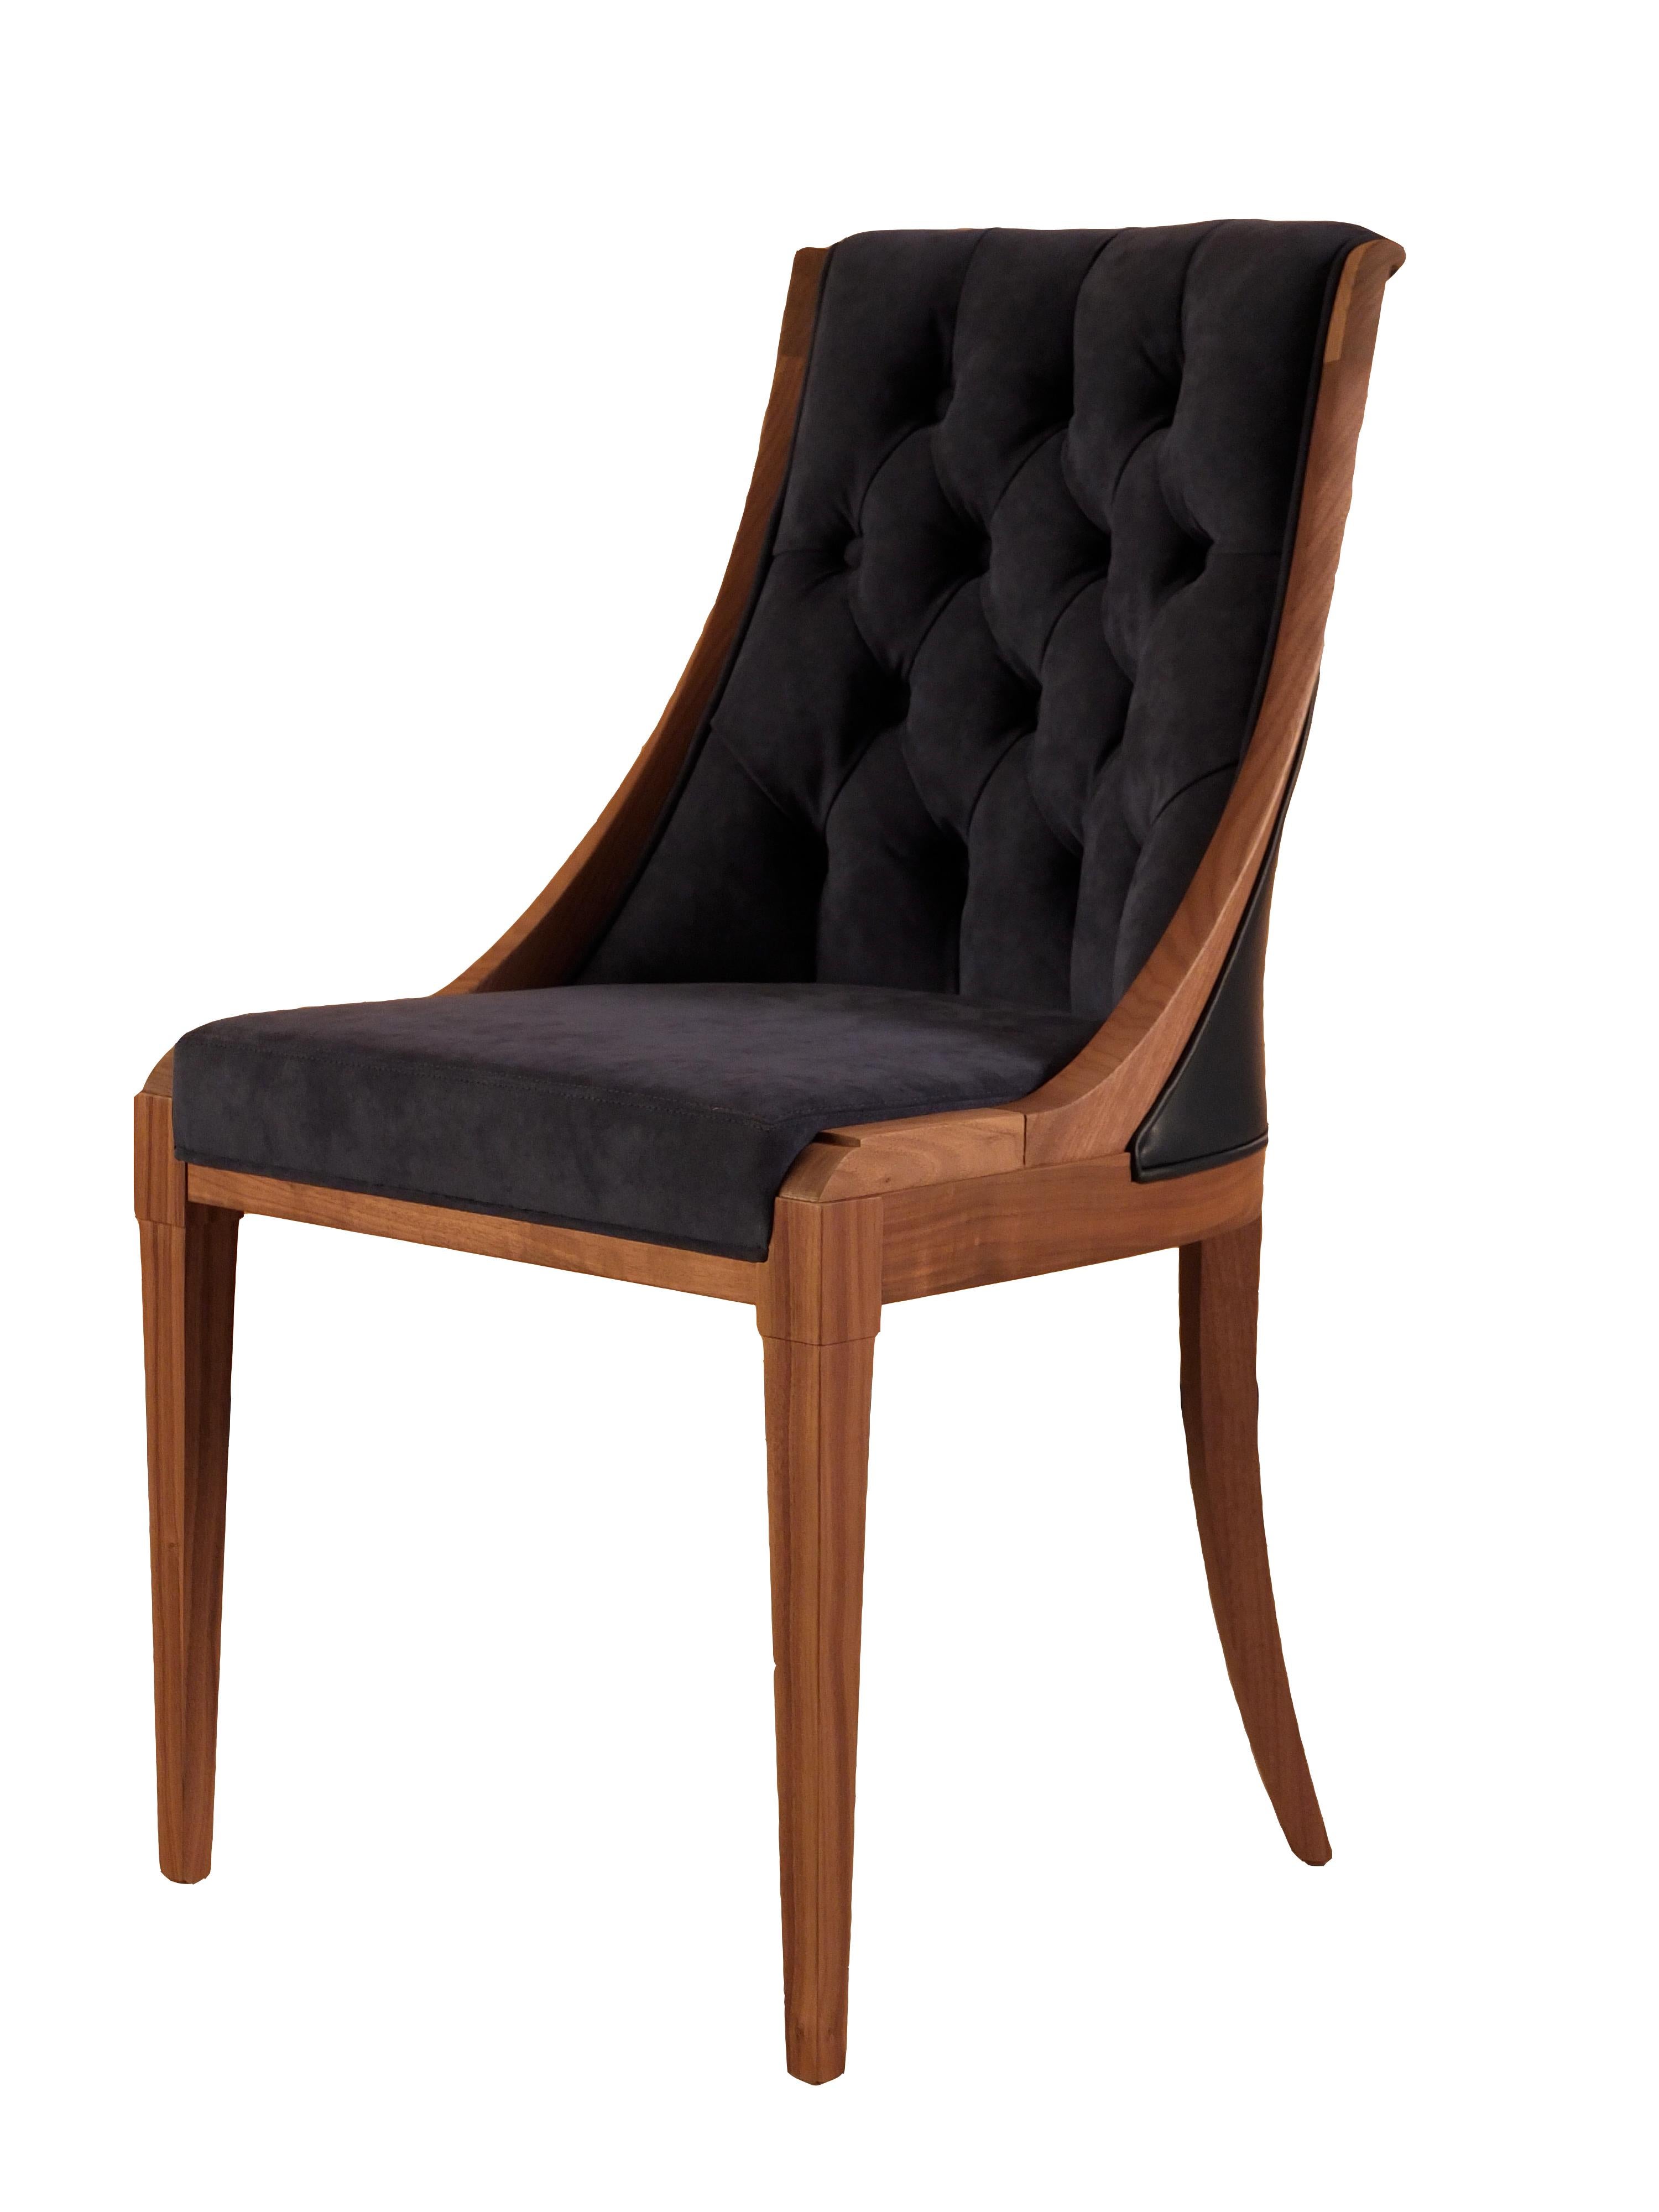 Musa est une élégante chaise de style Biedermeier fabriquée en bois de cerisier massif.
Finement garni de COM, de tissu ou de cuir.
Le cadre en bois peut être réalisé en différentes couleurs.
Fabriqué à la main en Italie par Morelato.
 